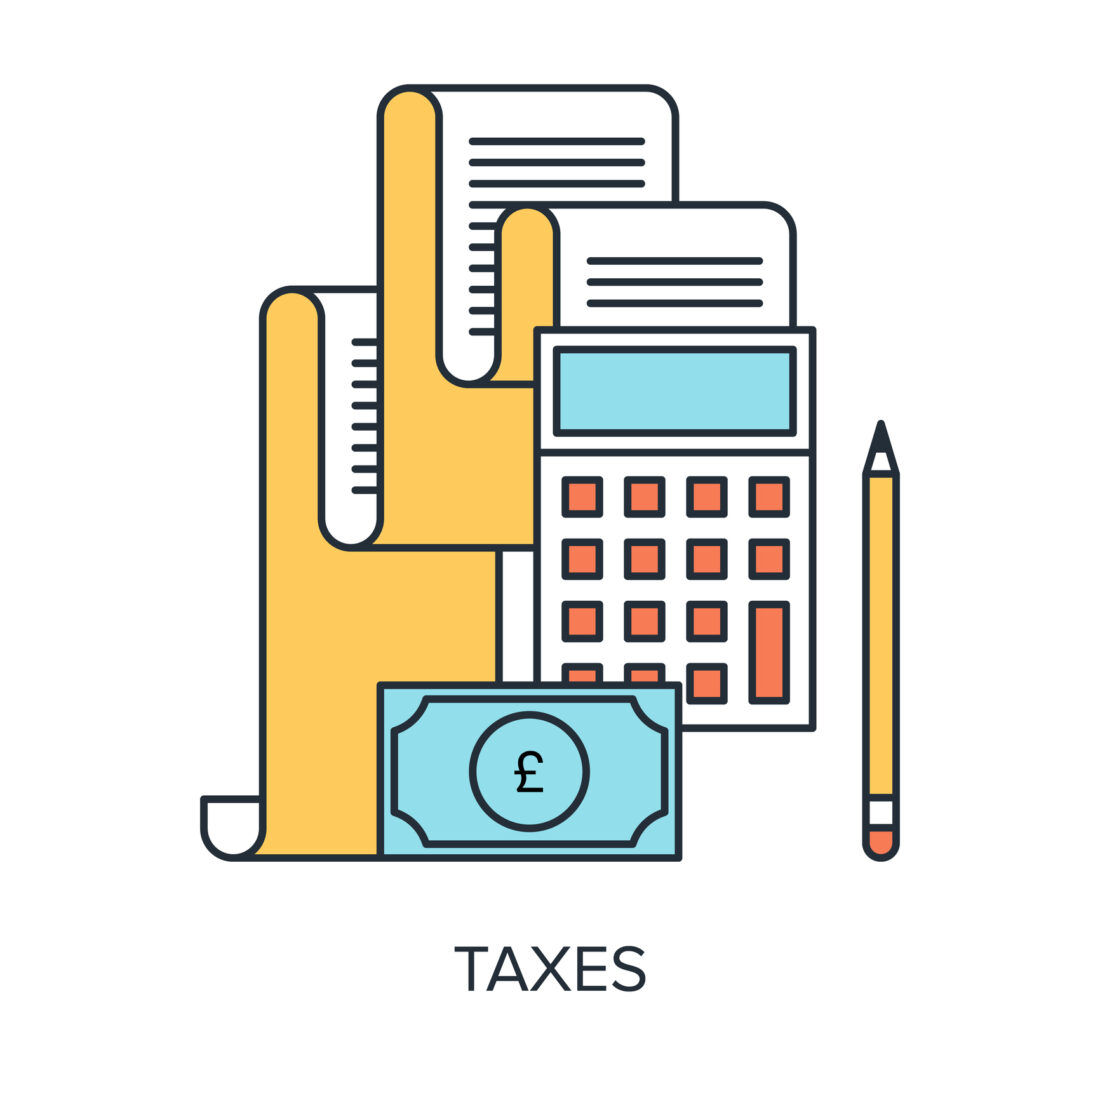 Taxes Concept